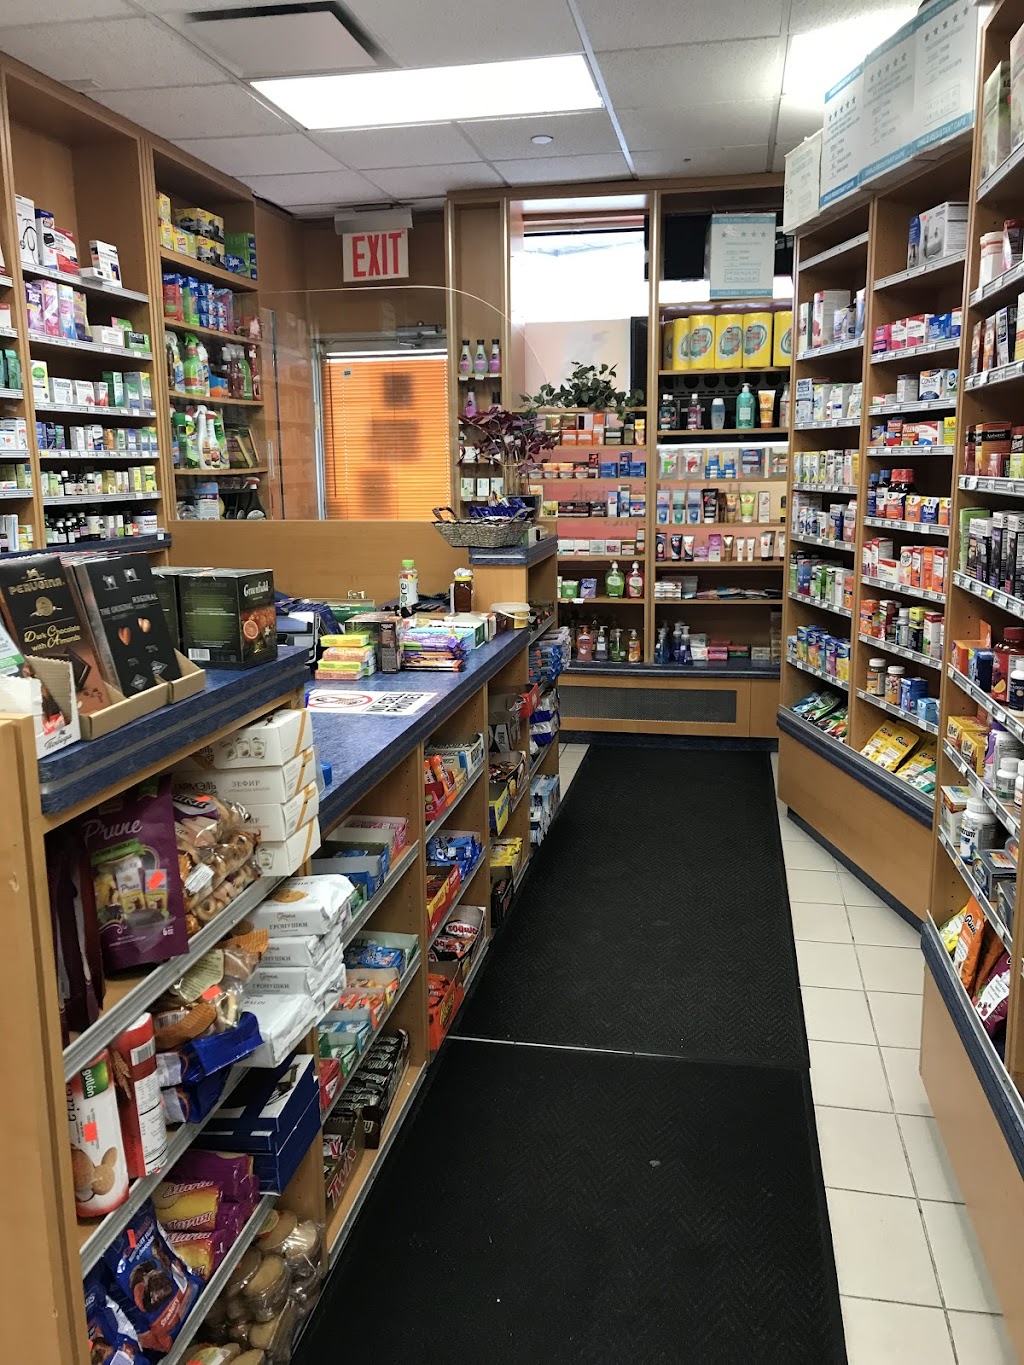 One Stop Pharmacy | 1220 Avenue P, Brooklyn, NY 11229 | Phone: (718) 336-2244